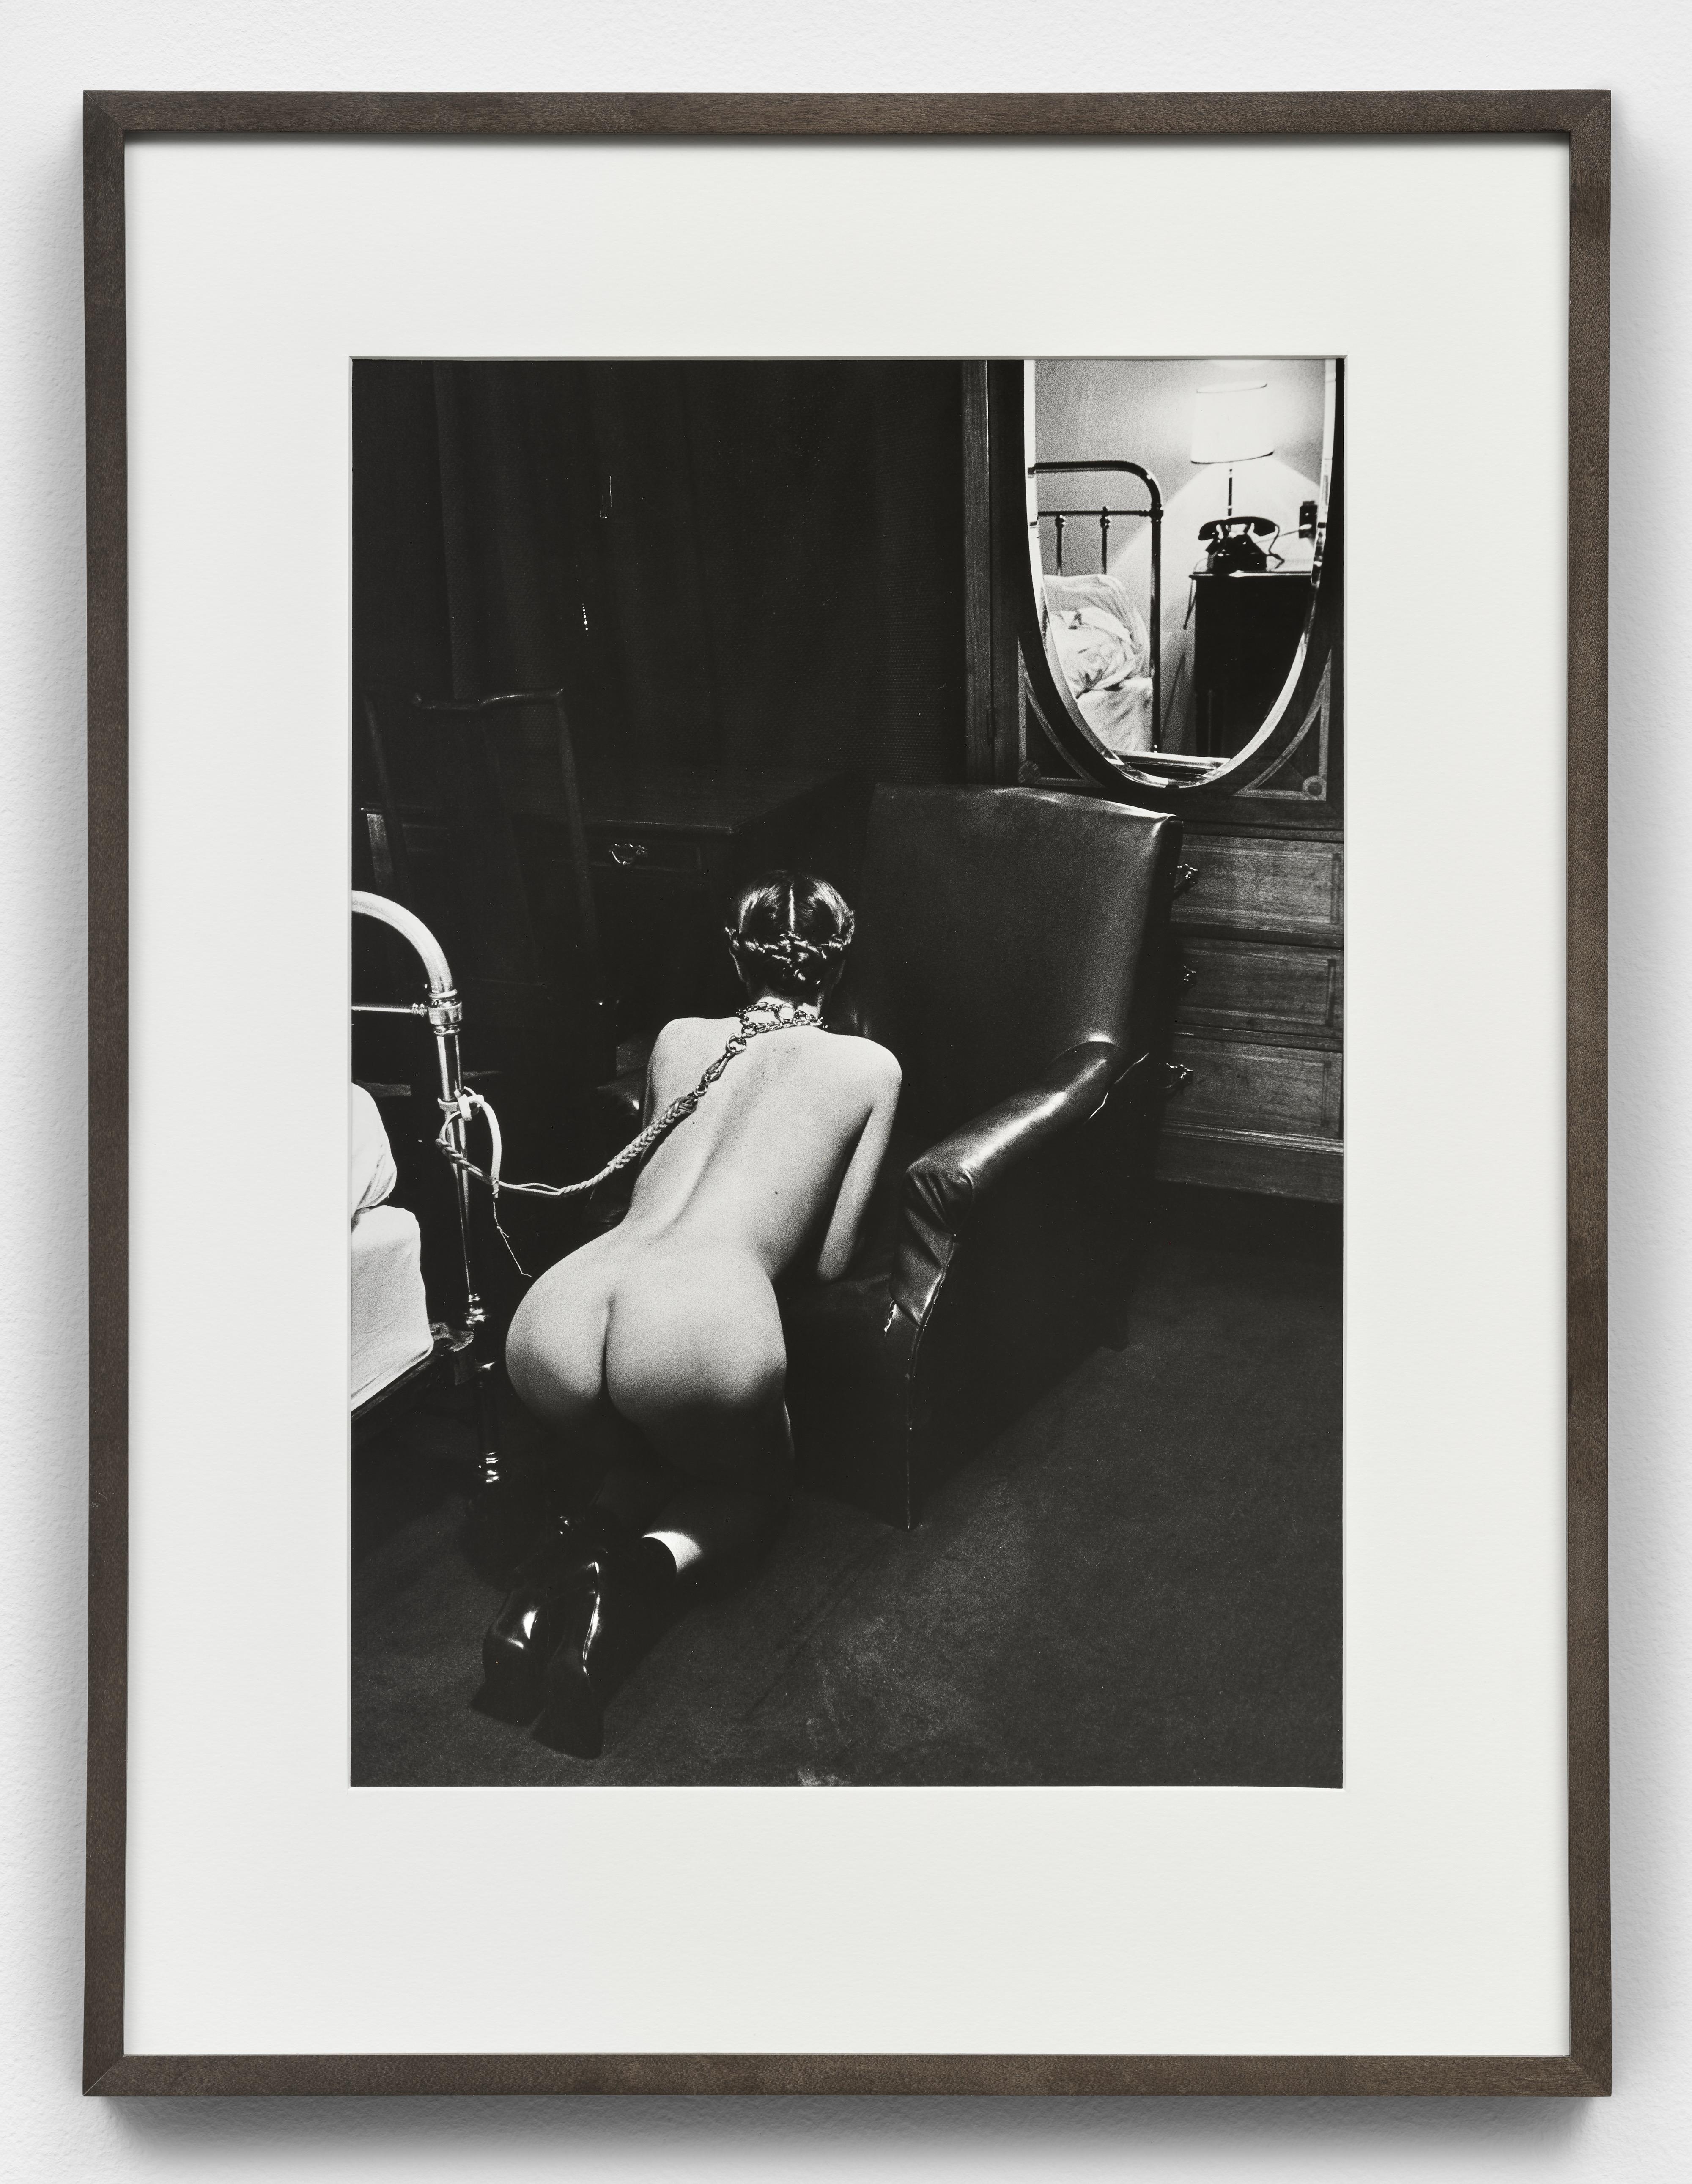 Helmut Newton Nude Photograph - Hotel Room, Place de la République, Paris